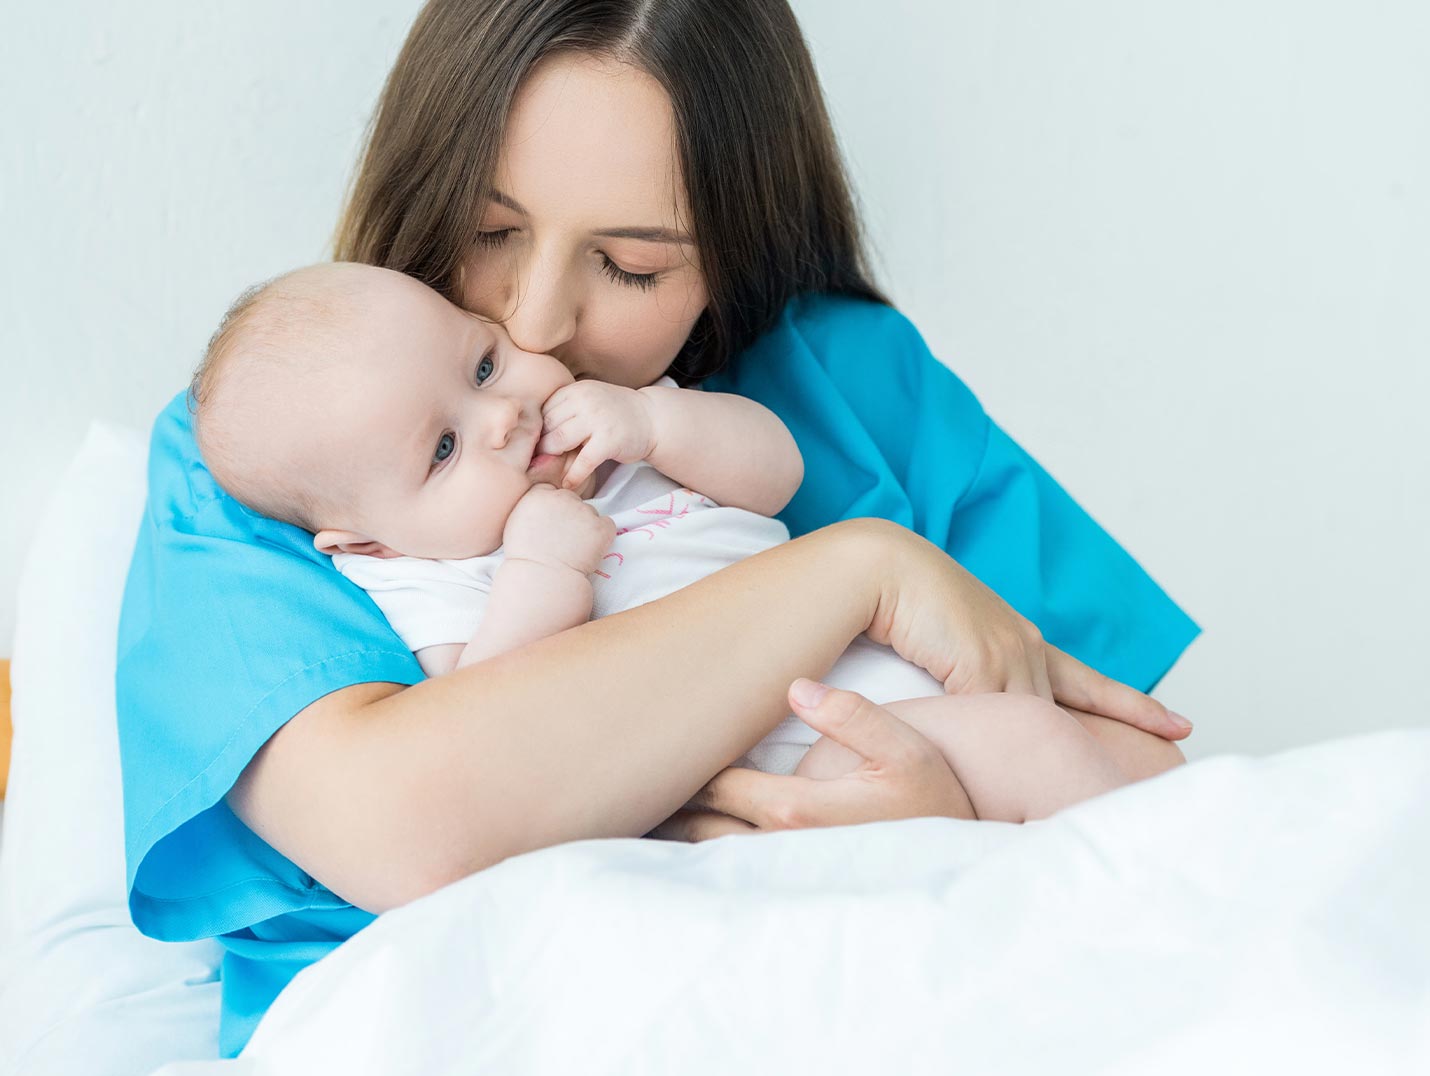 Una mamá vestida con una bata azul, cargando a su bebé recién nacido y besándolo en la mejilla izquierda